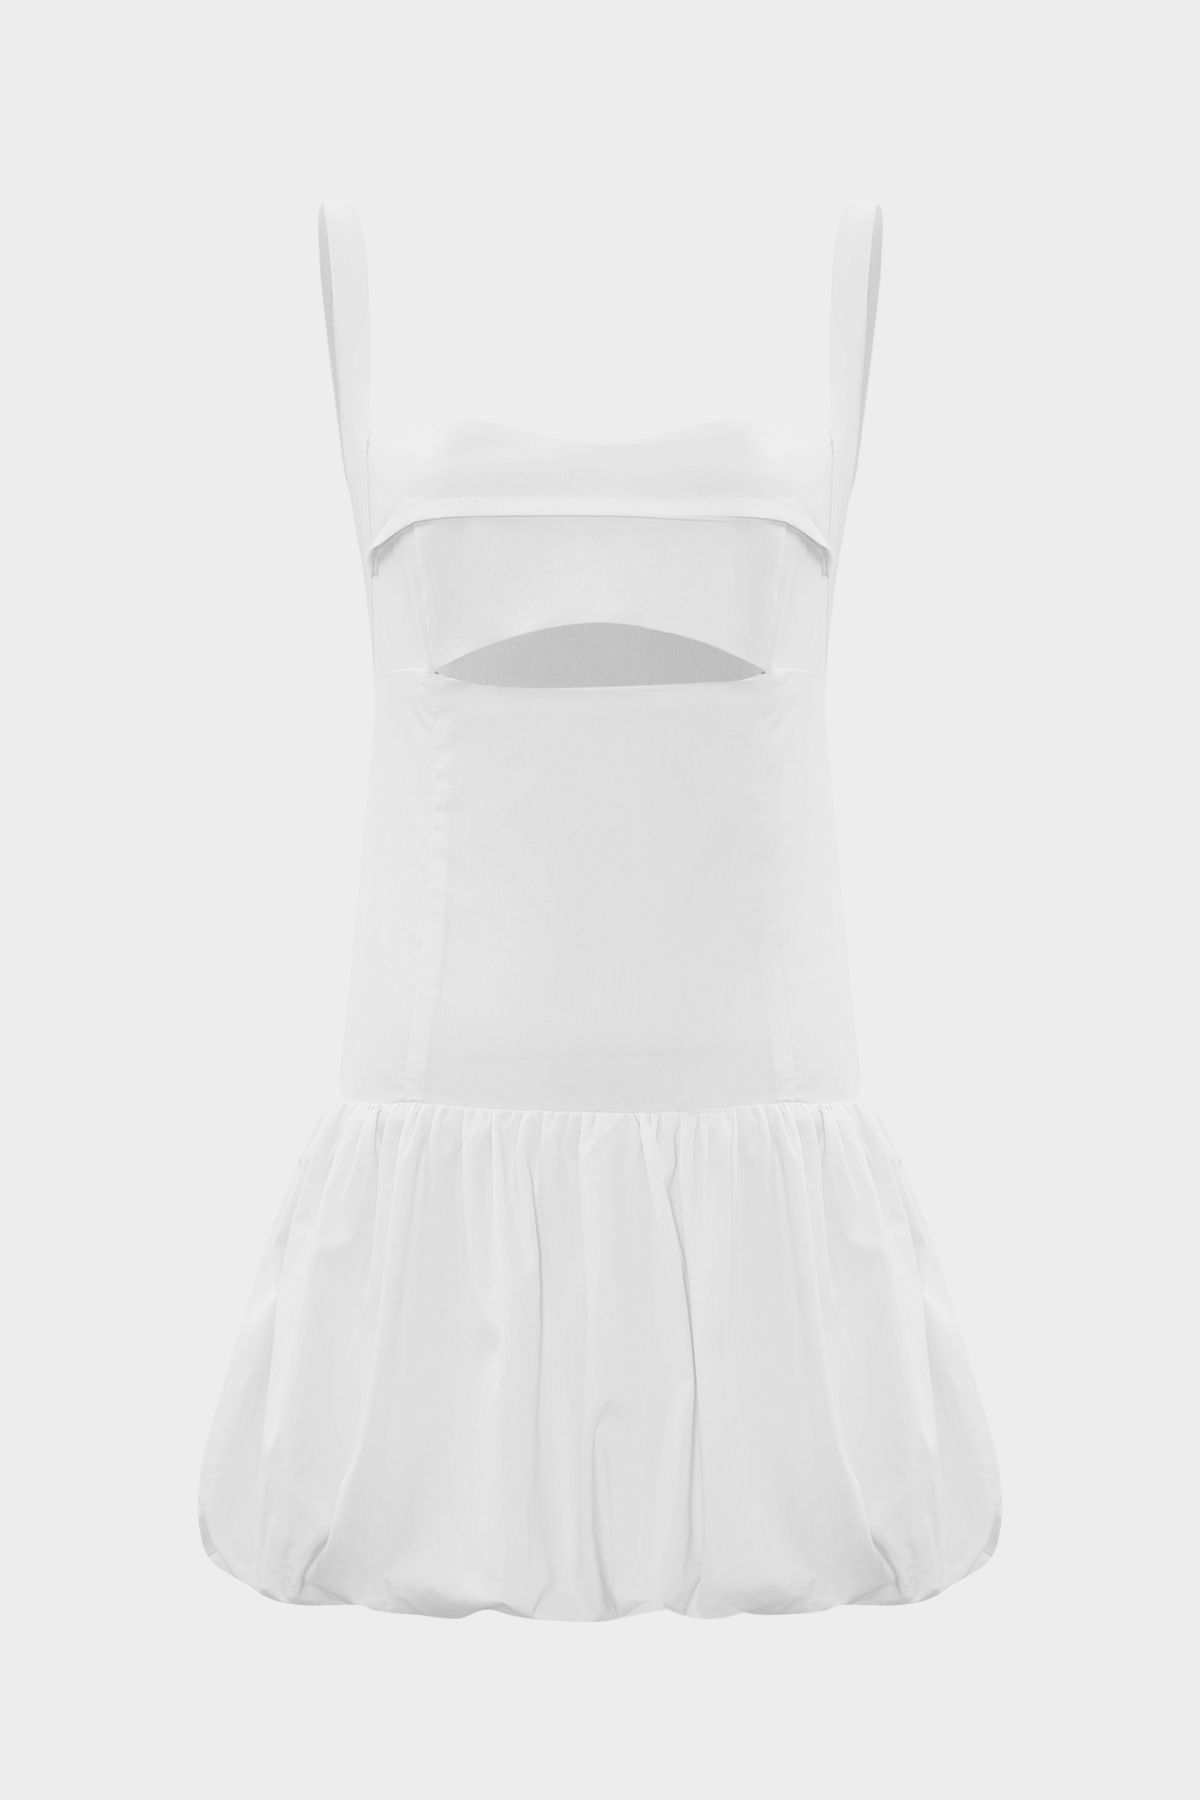 Açelya Okcu Premium Askılı Mini Balon Kadın Elbise